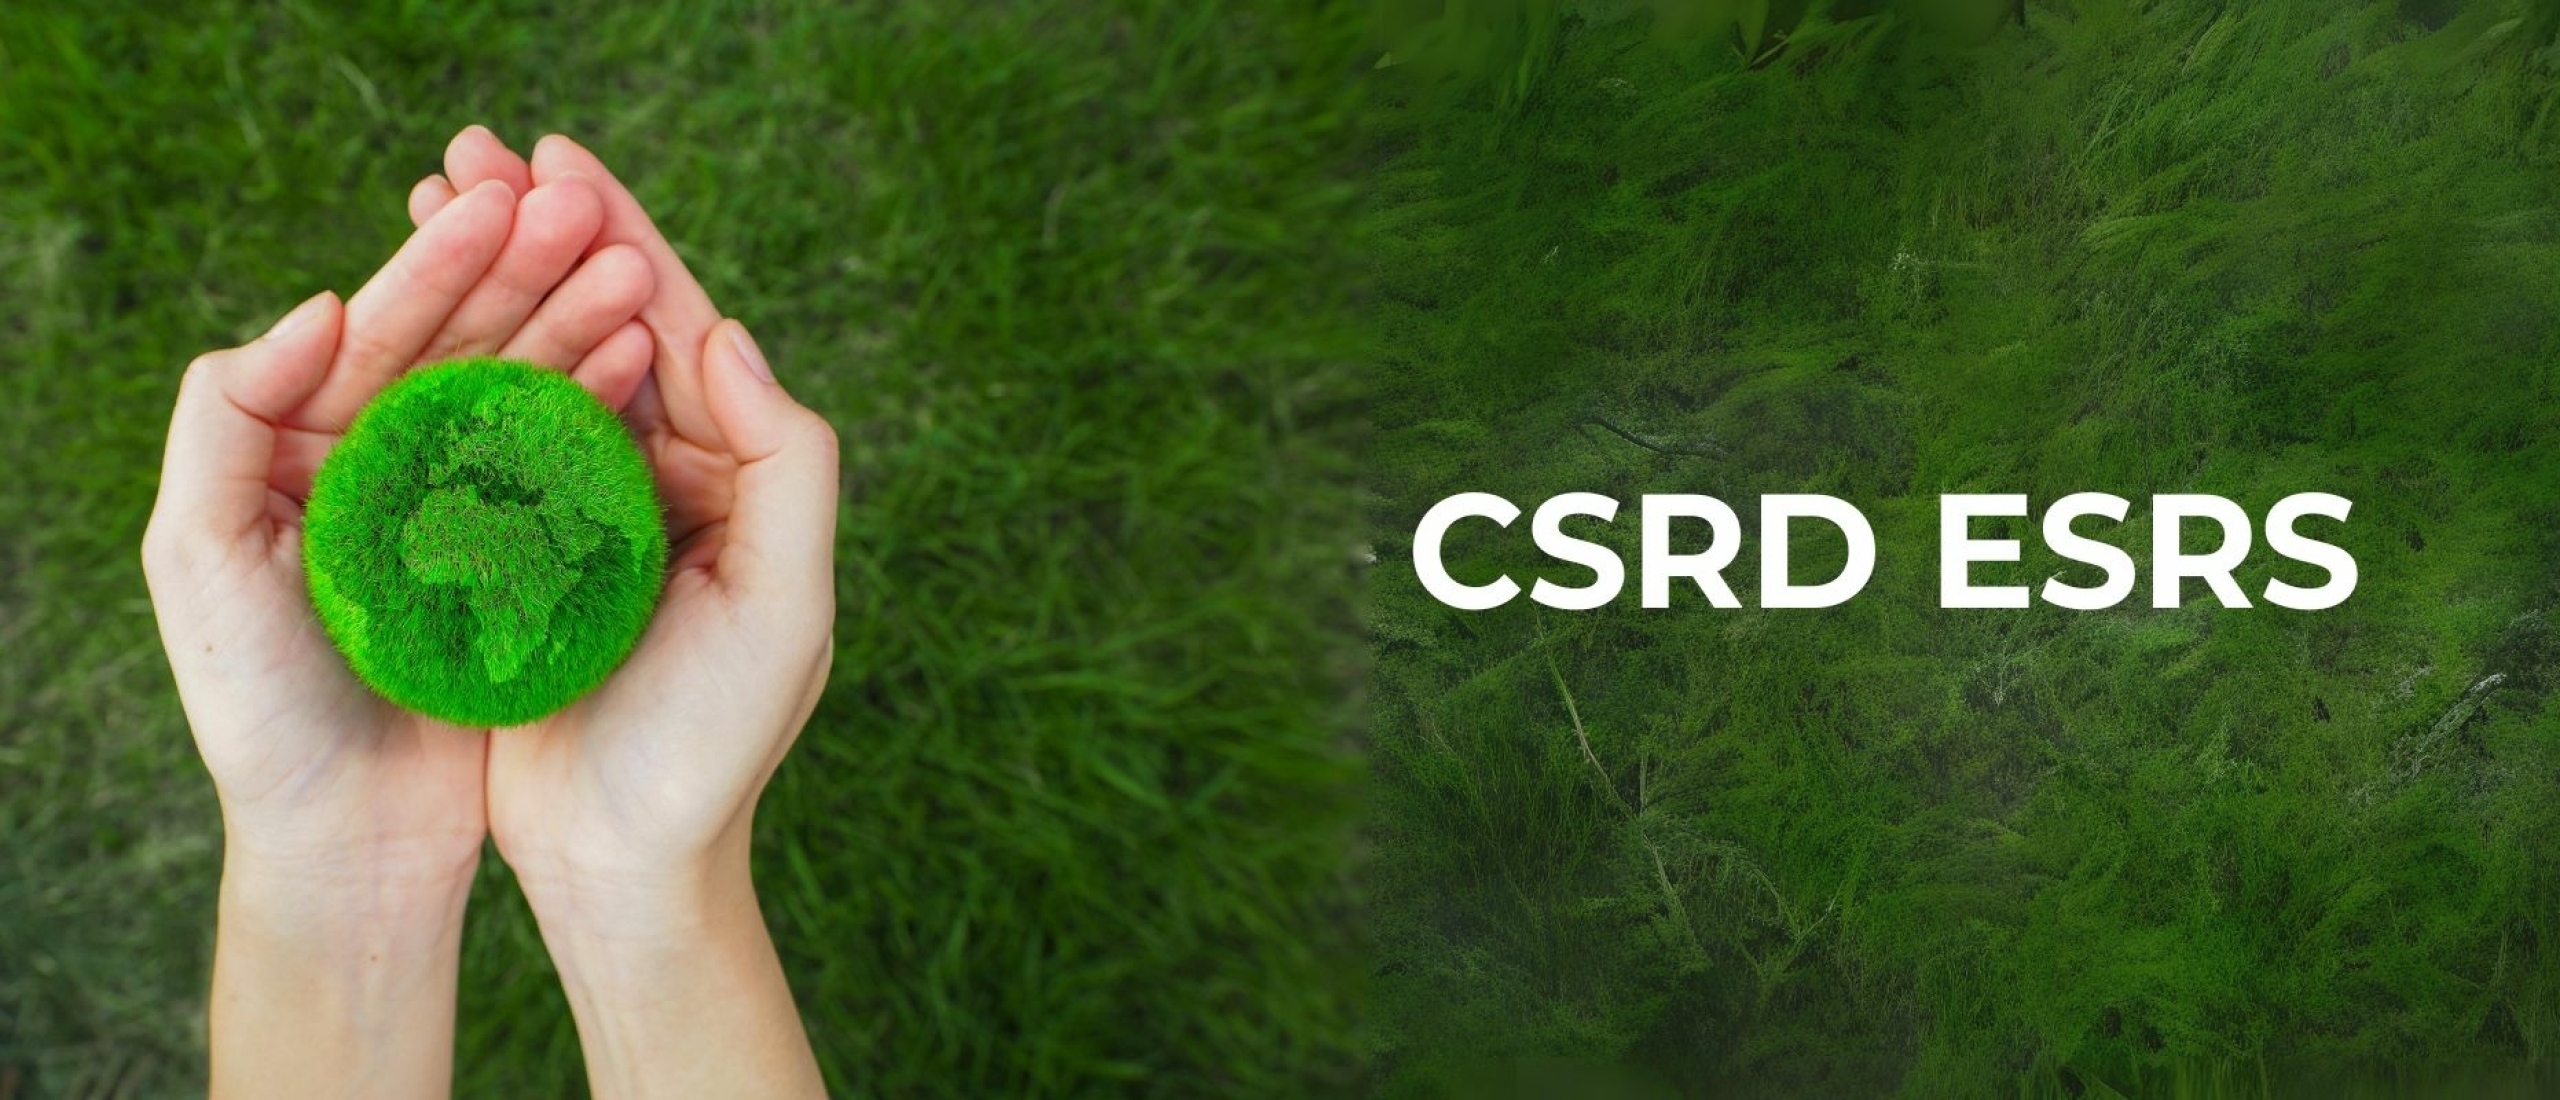 CSRD ESRS: De nieuwe standaard in duurzaamheidsrapportage